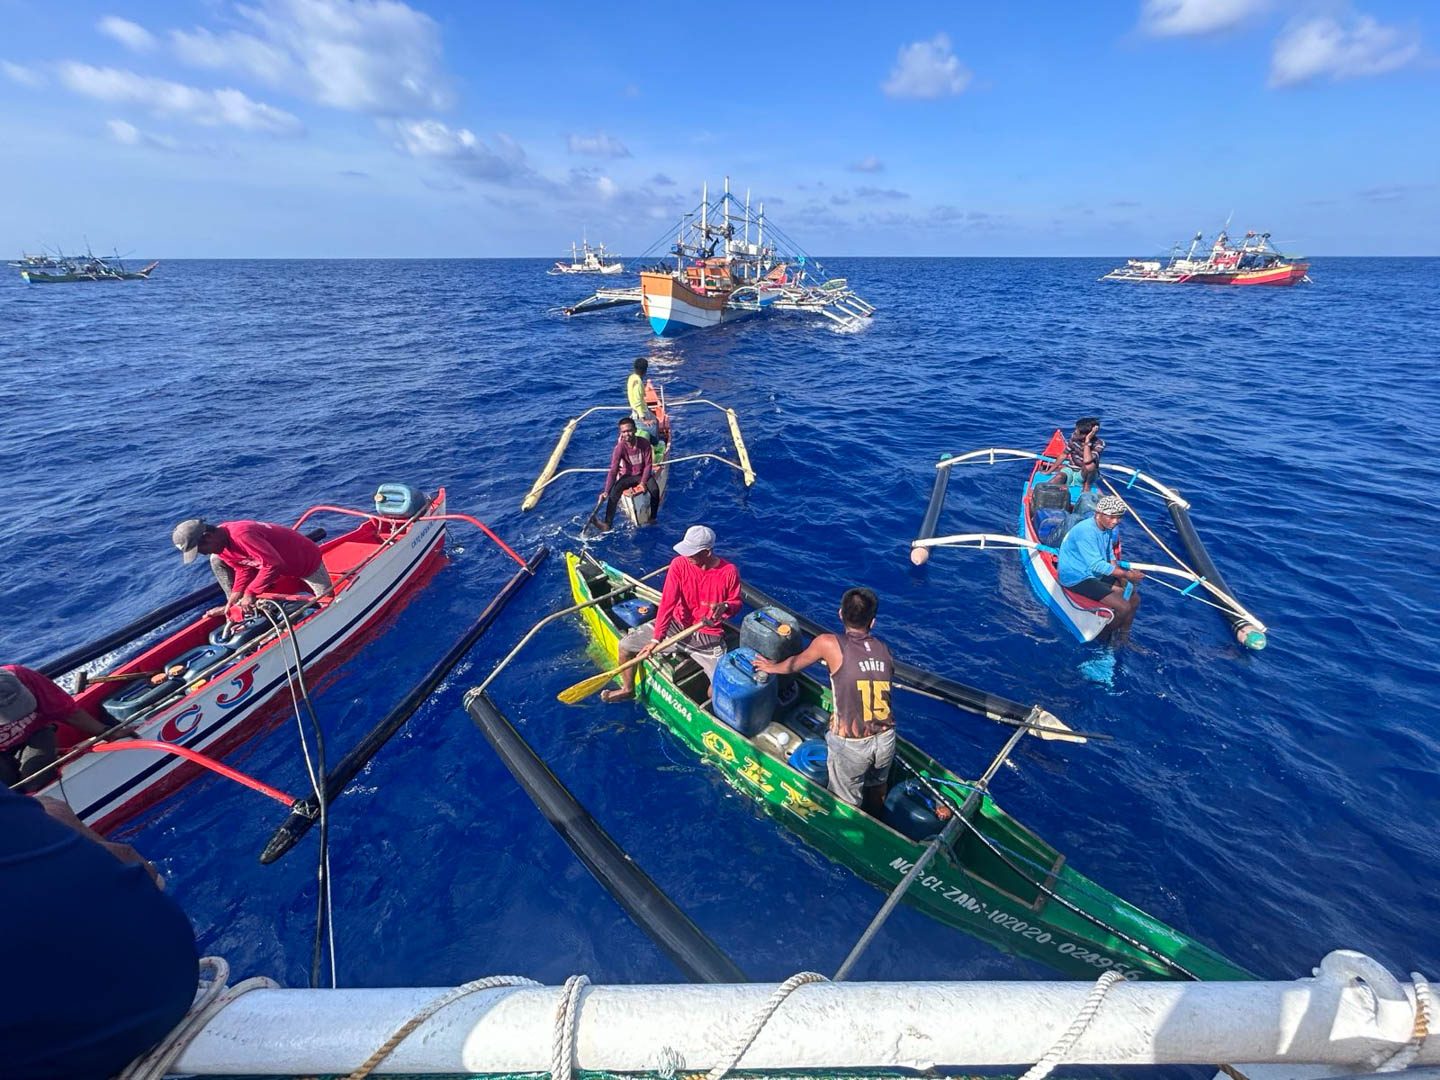 Chinese ships head to Panatag Shoal ahead of civilian Atin Ito voyage